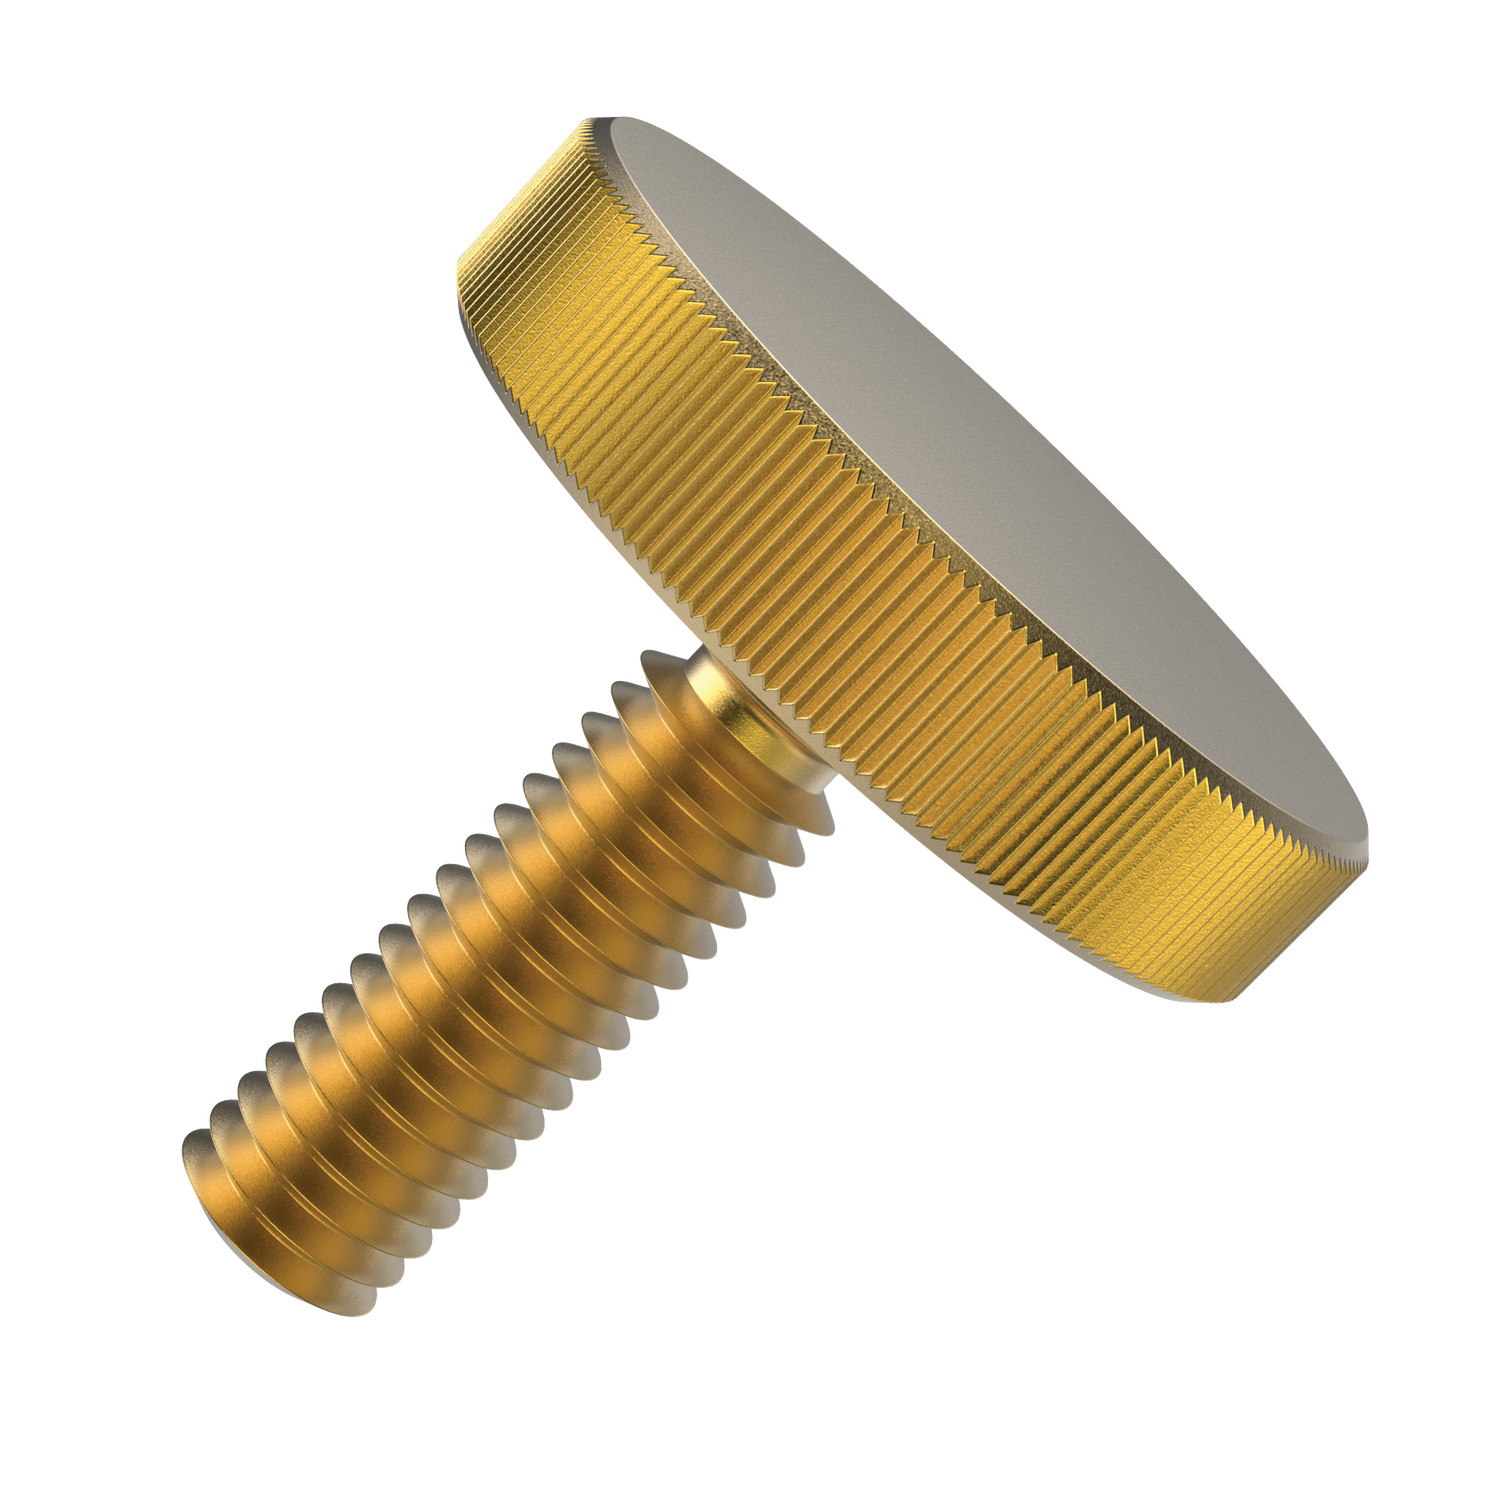 P0405.030-006-BR Knurled Thumb Screw M3x6 brass 